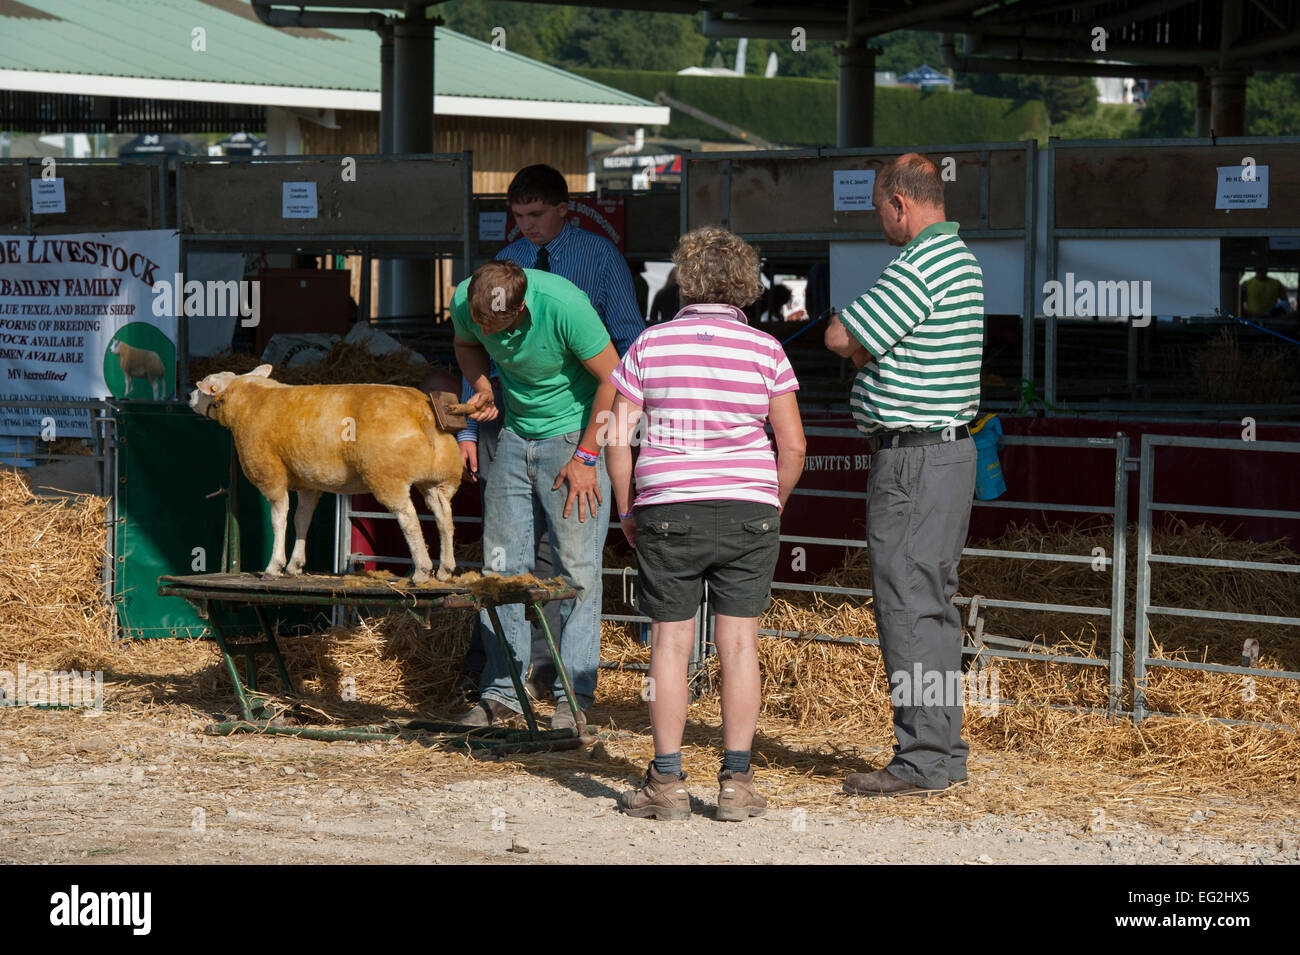 Les gens regardent en tant que concurrent dans la classe, les moutons loegel jet est brossé par agriculteur propriétaire, avant qu'elle passe la concurrence - Great Yorkshire Show, England, UK. Banque D'Images